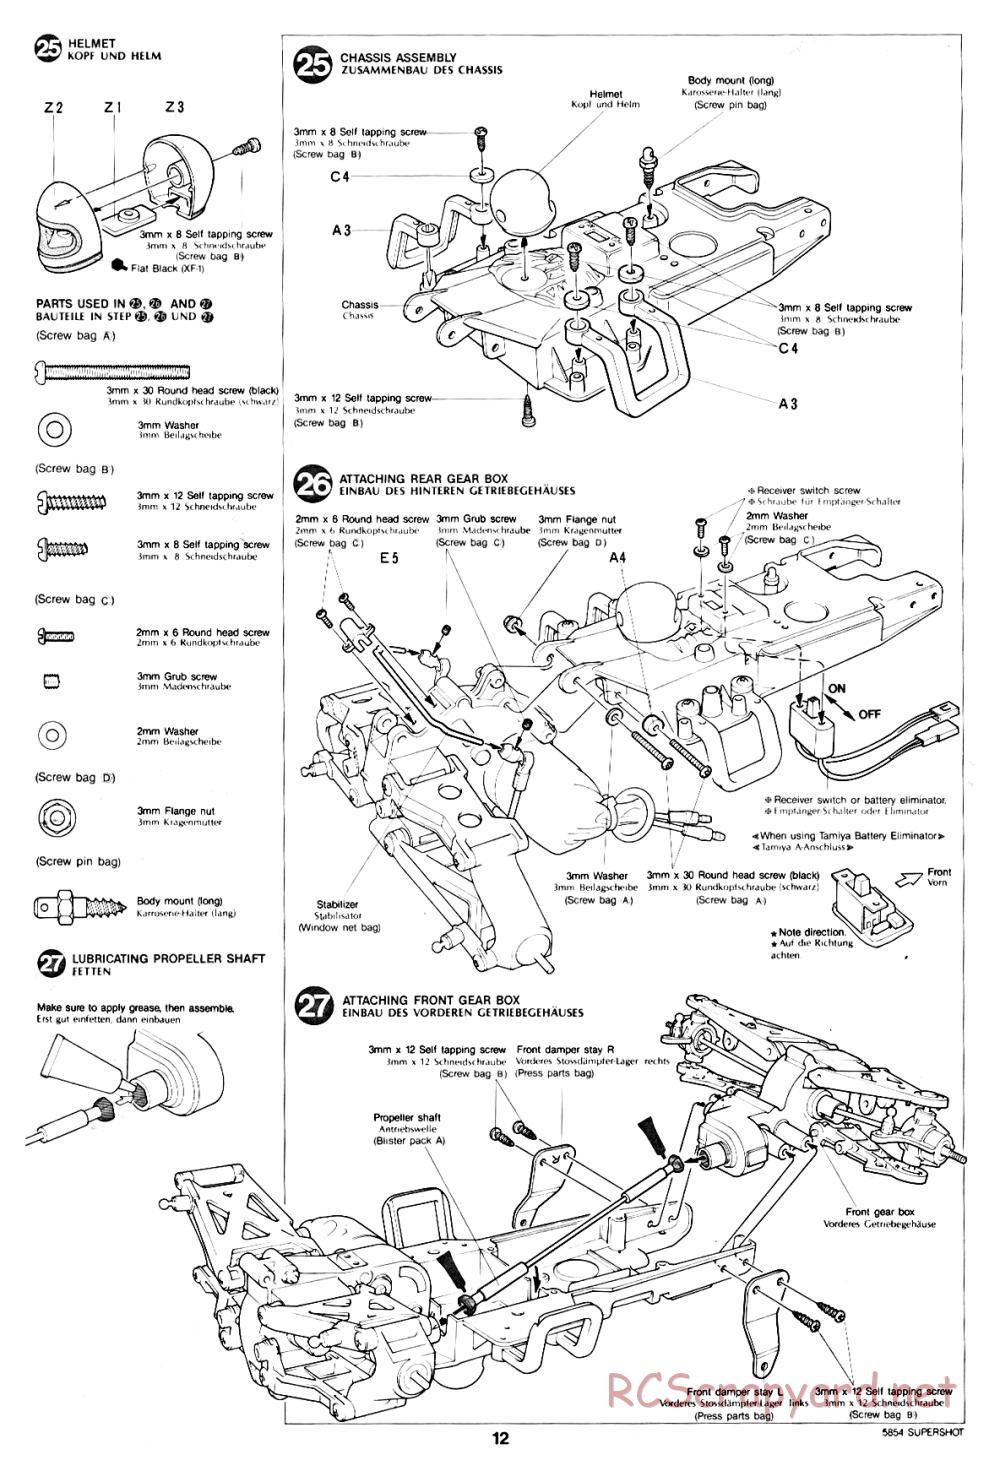 Tamiya - Supershot - 58054 - Manual - Page 12